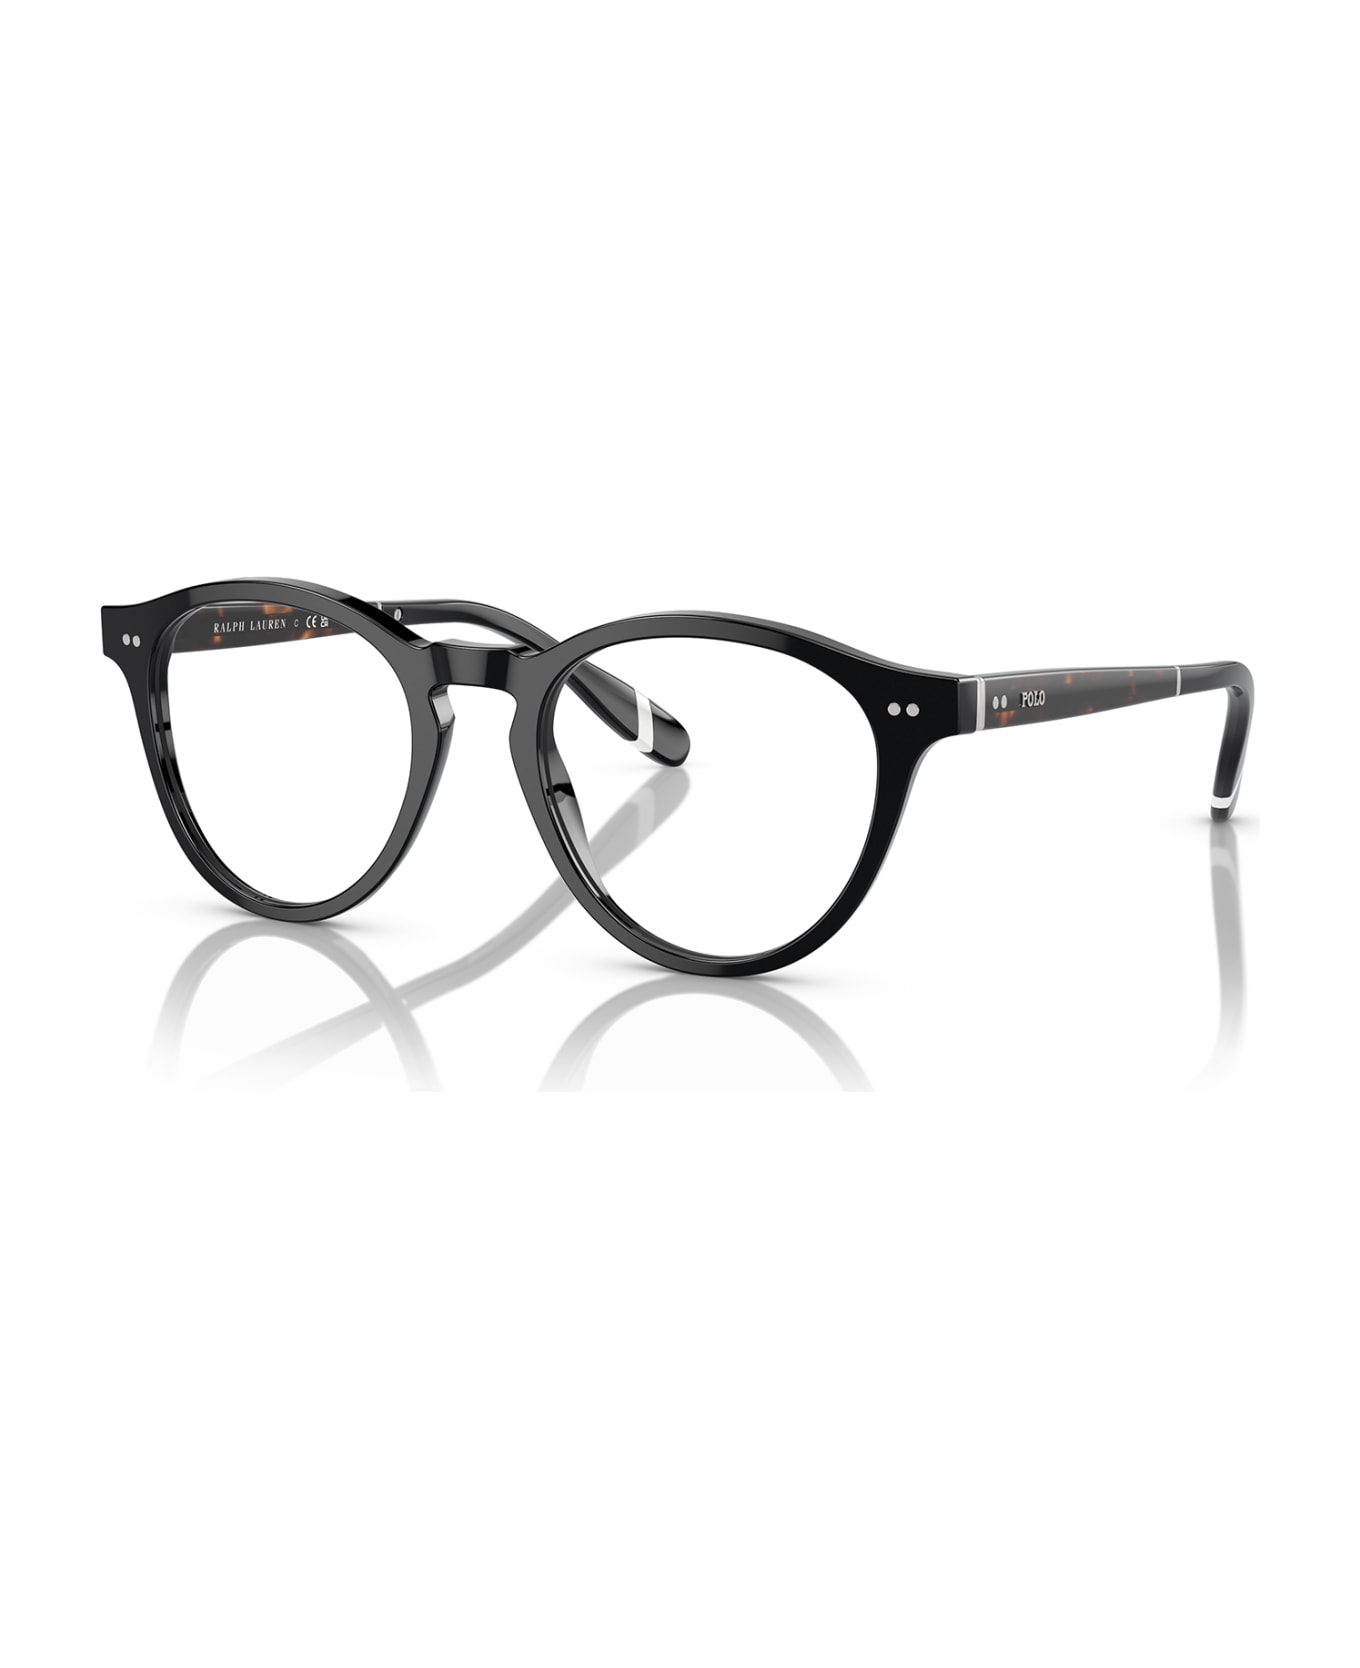 Polo Ralph Lauren Ph2268 Shiny Black Glasses - Shiny Black